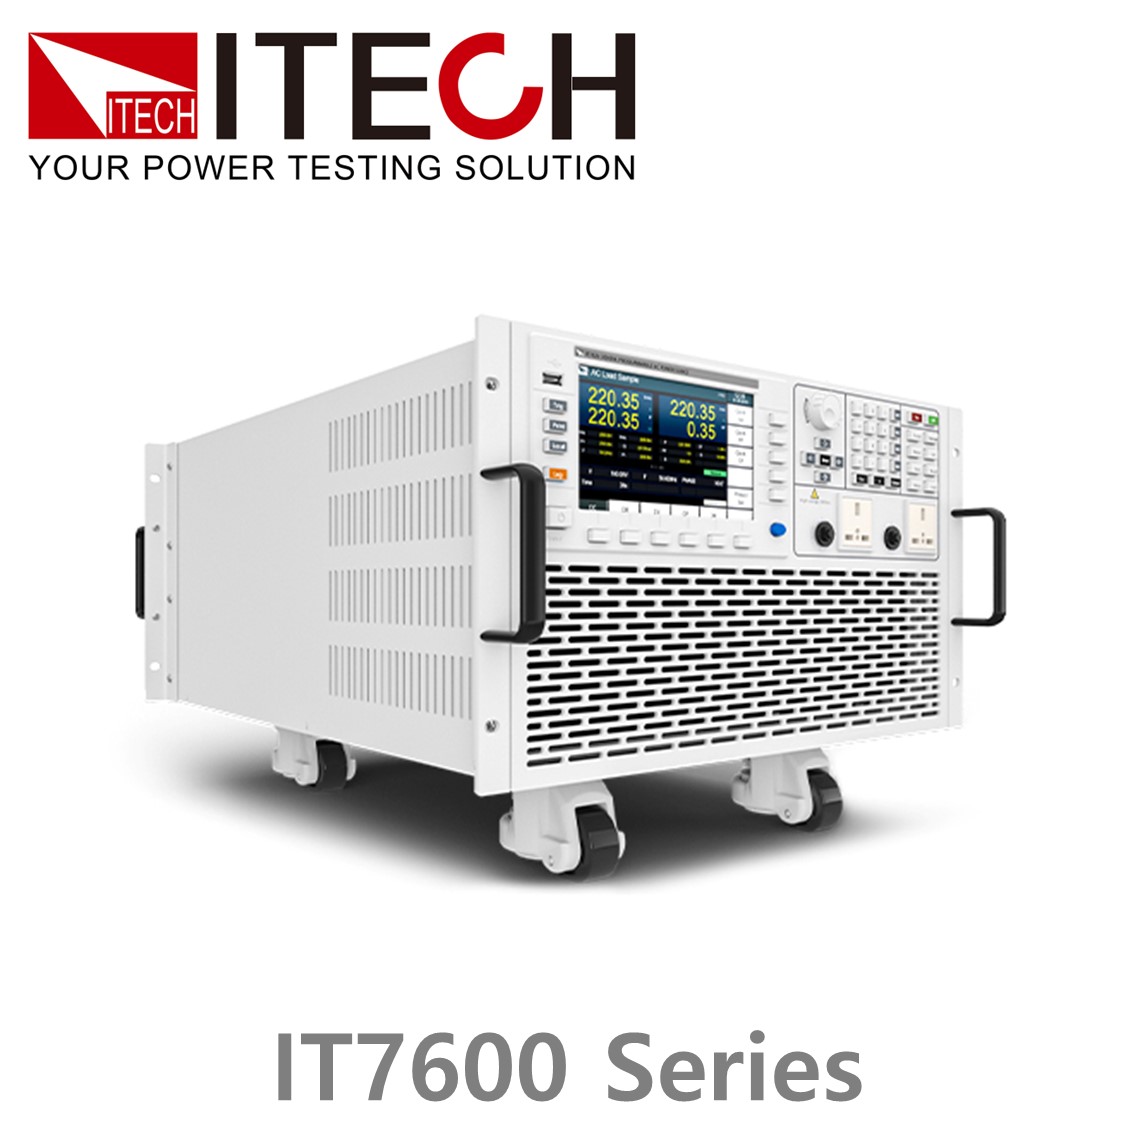 [ ITECH ] IT7600시리즈 리니어 프로그래머블 고주파 AC전원공급기 (750~3000VA…5kHz)